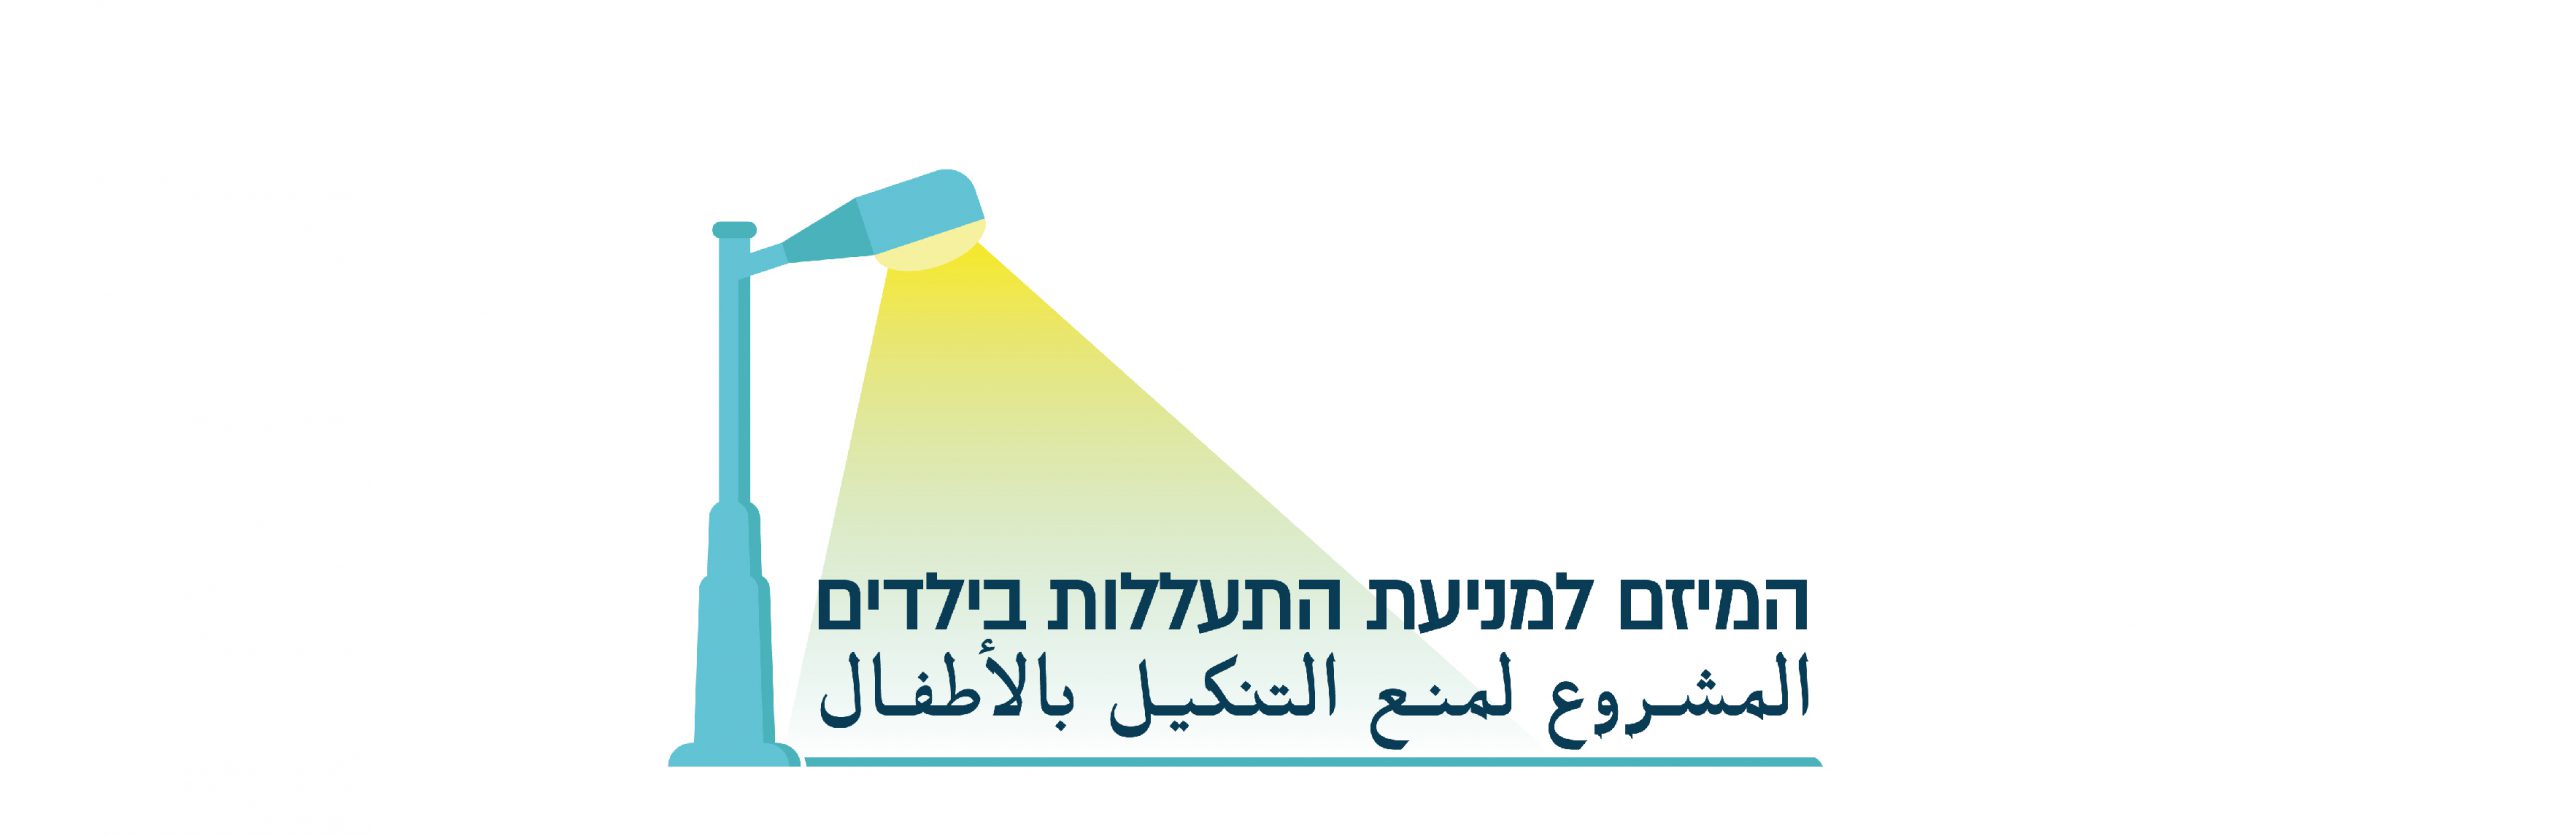 לוגו המיזם למניעת התעללות והזנחה